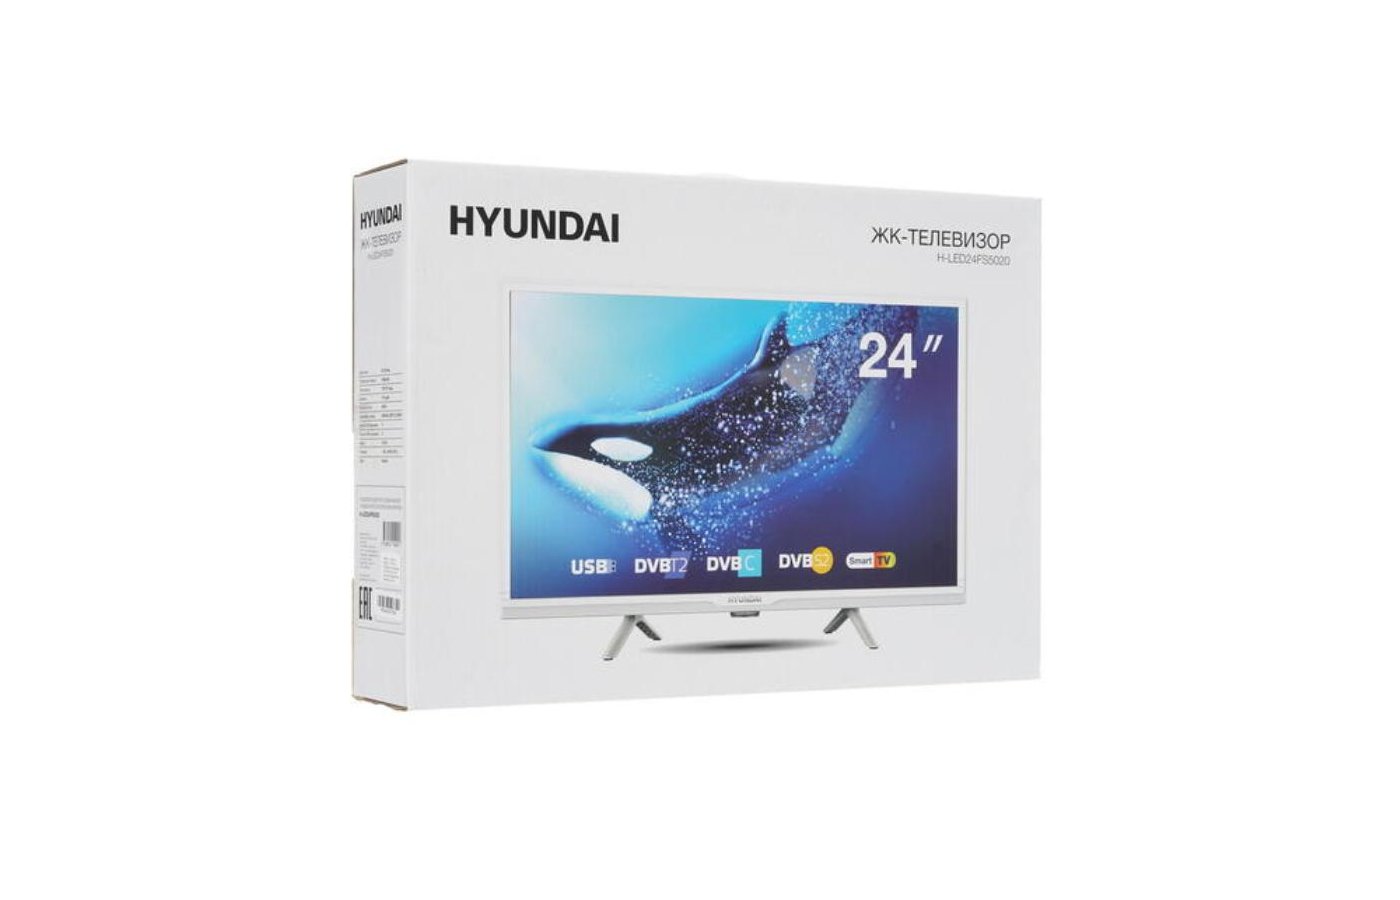 Телевизор hyundai led50qbu7500